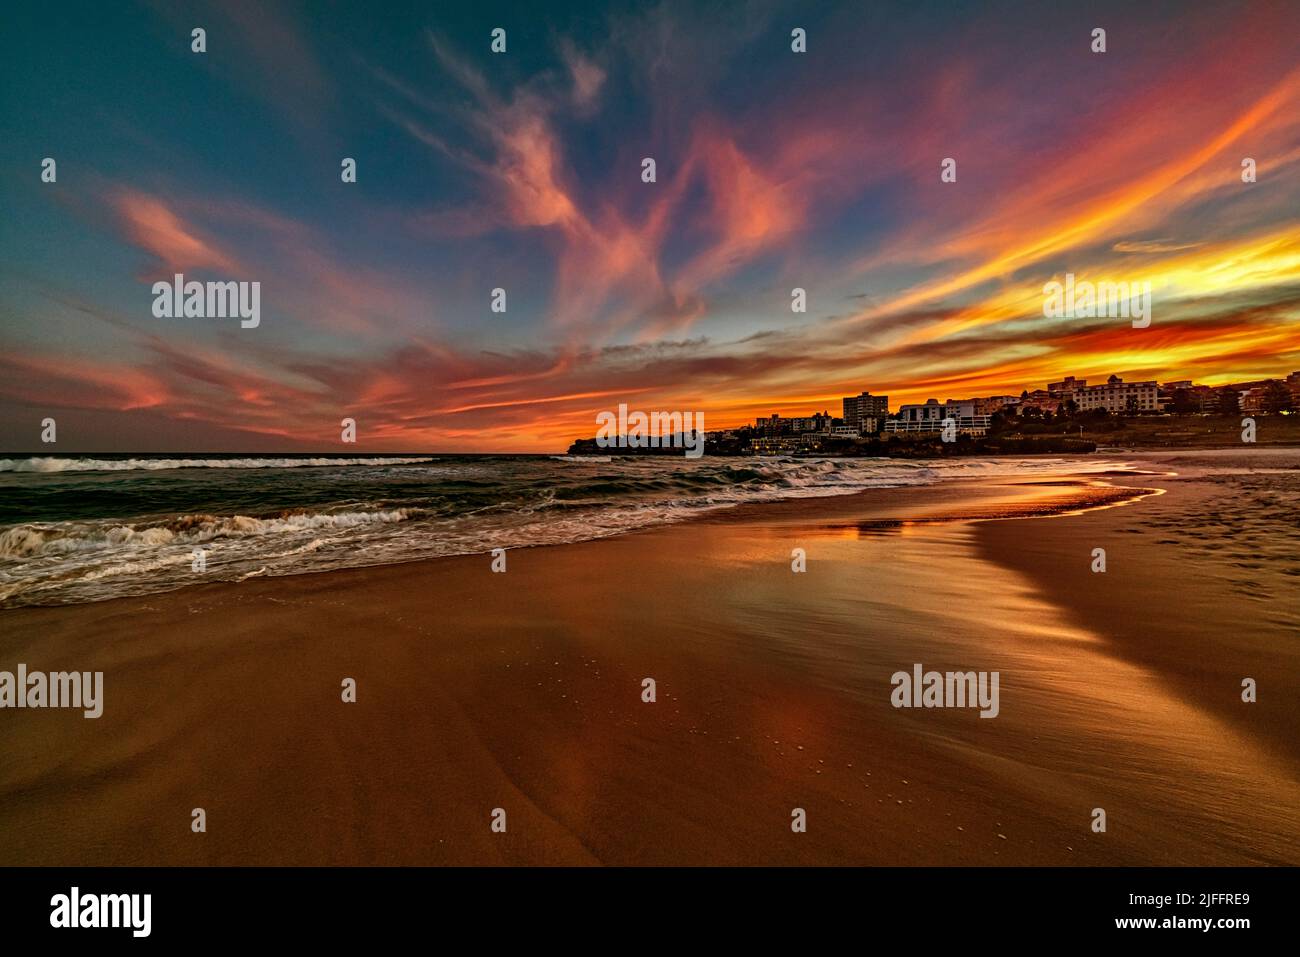 Splendidi cieli colorati mentre il sole sorge sulla famosa Bondi Beach a Sydney, Australia. Guardare a sud sulla sabbia deserta è magico Foto Stock